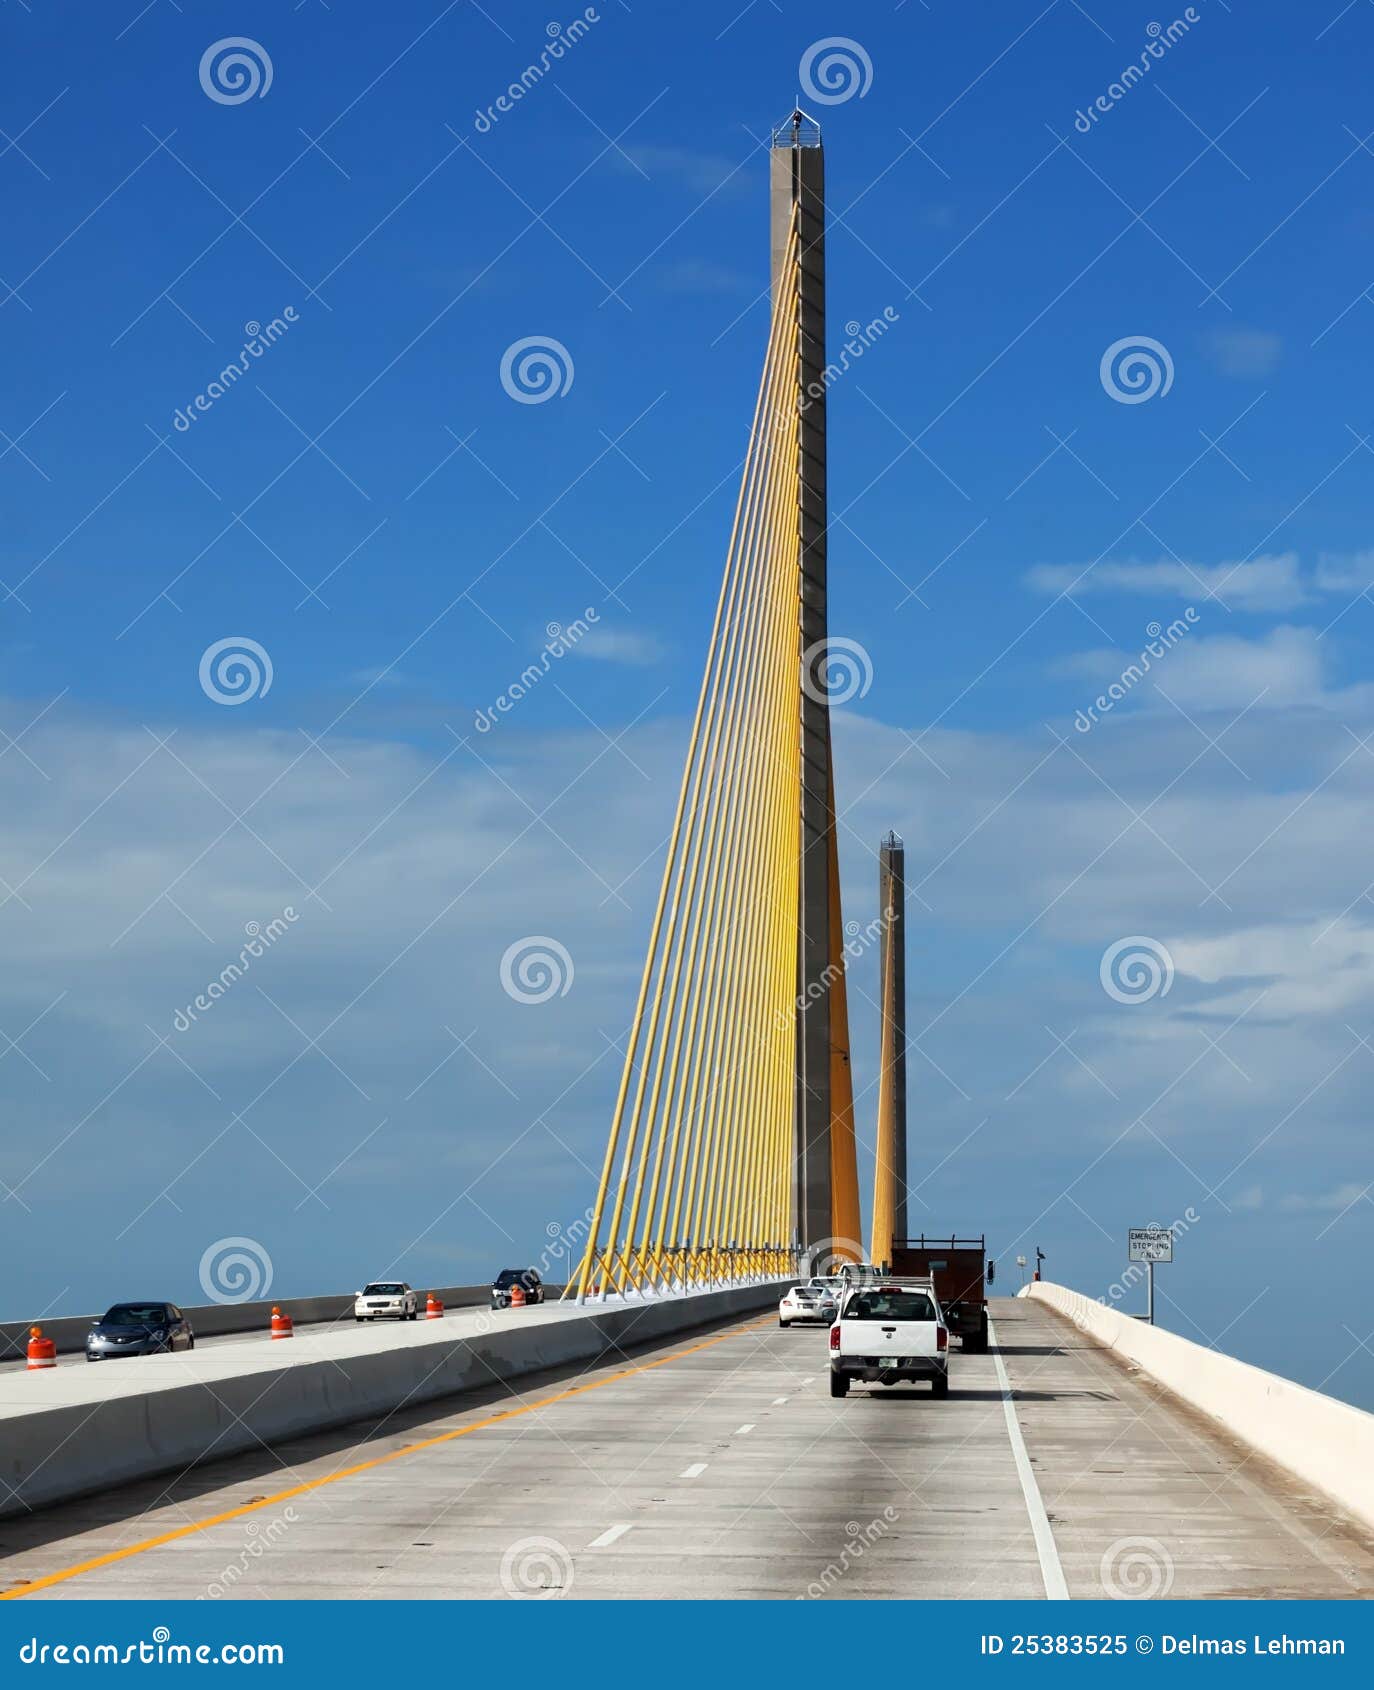 sunshine skyway bridge